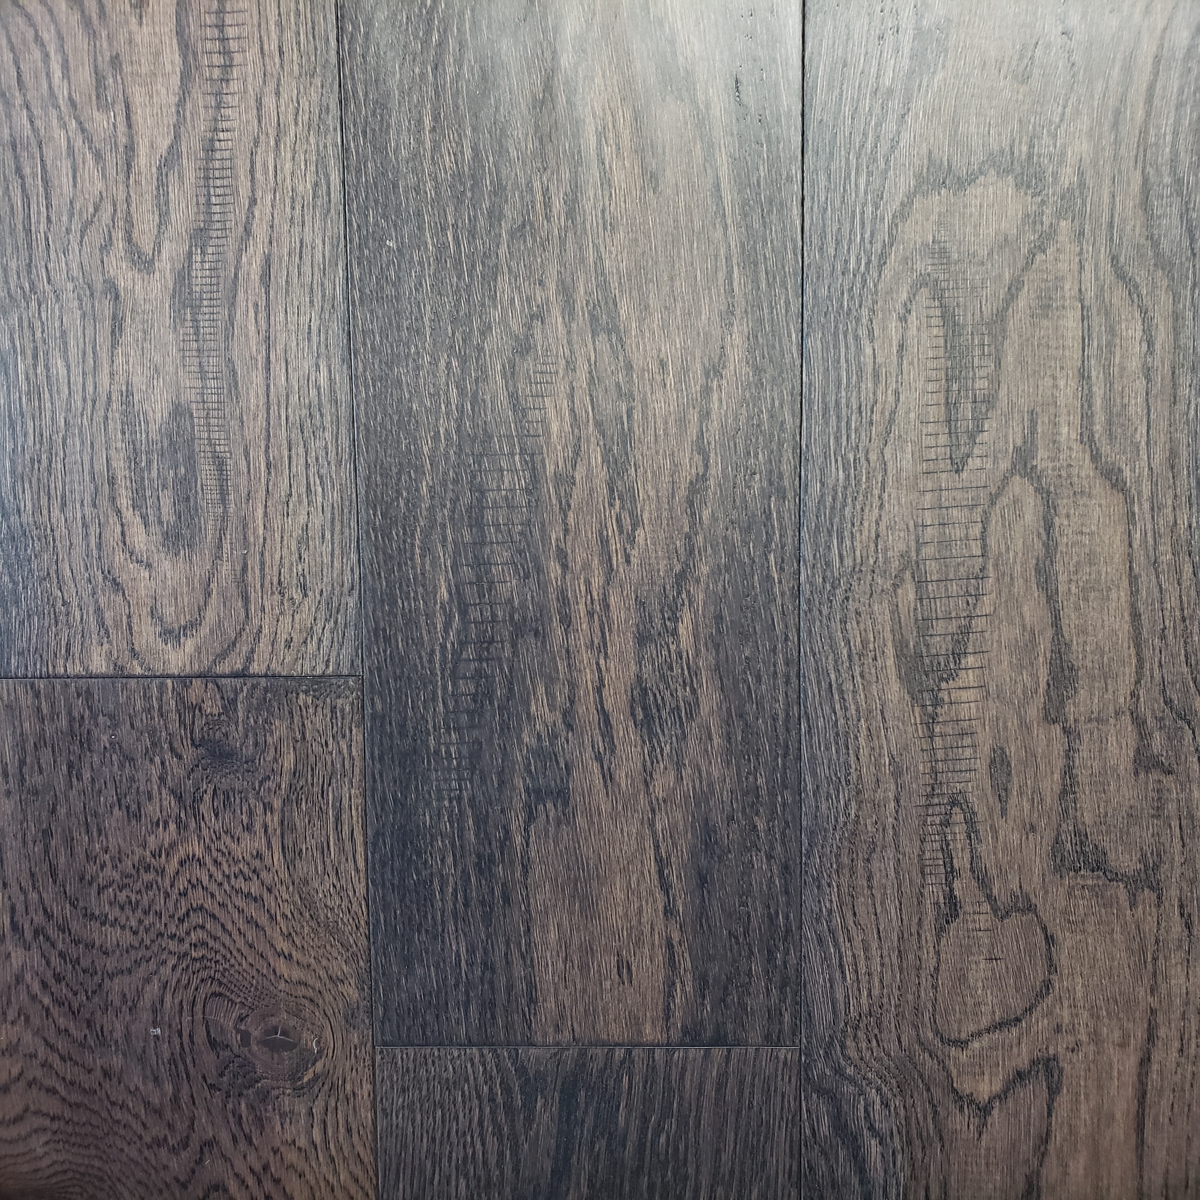 Engineered Hardwood Flooring, Grey Engineered Hardwood Floors